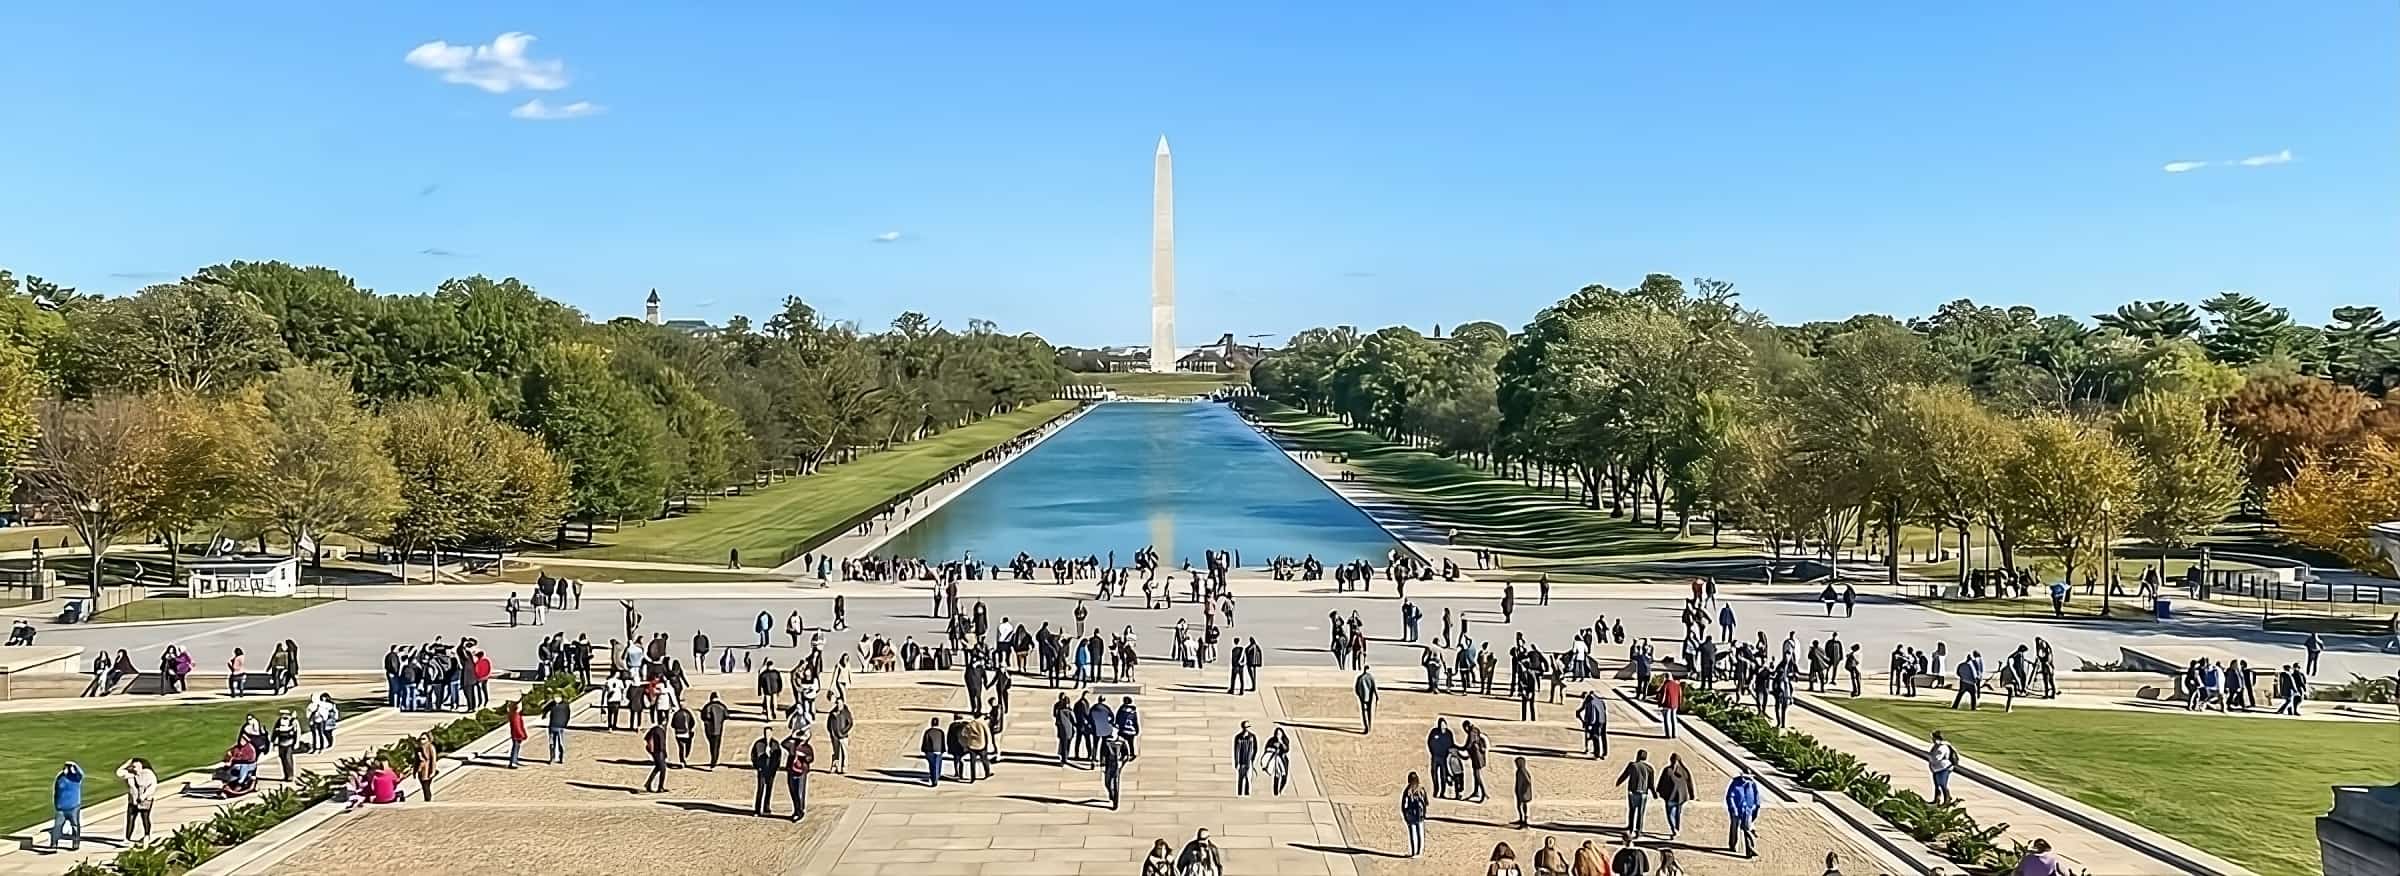 Staw przed Pomnikiem Lincolna (Lincoln Memorial Reflecting Pool) 